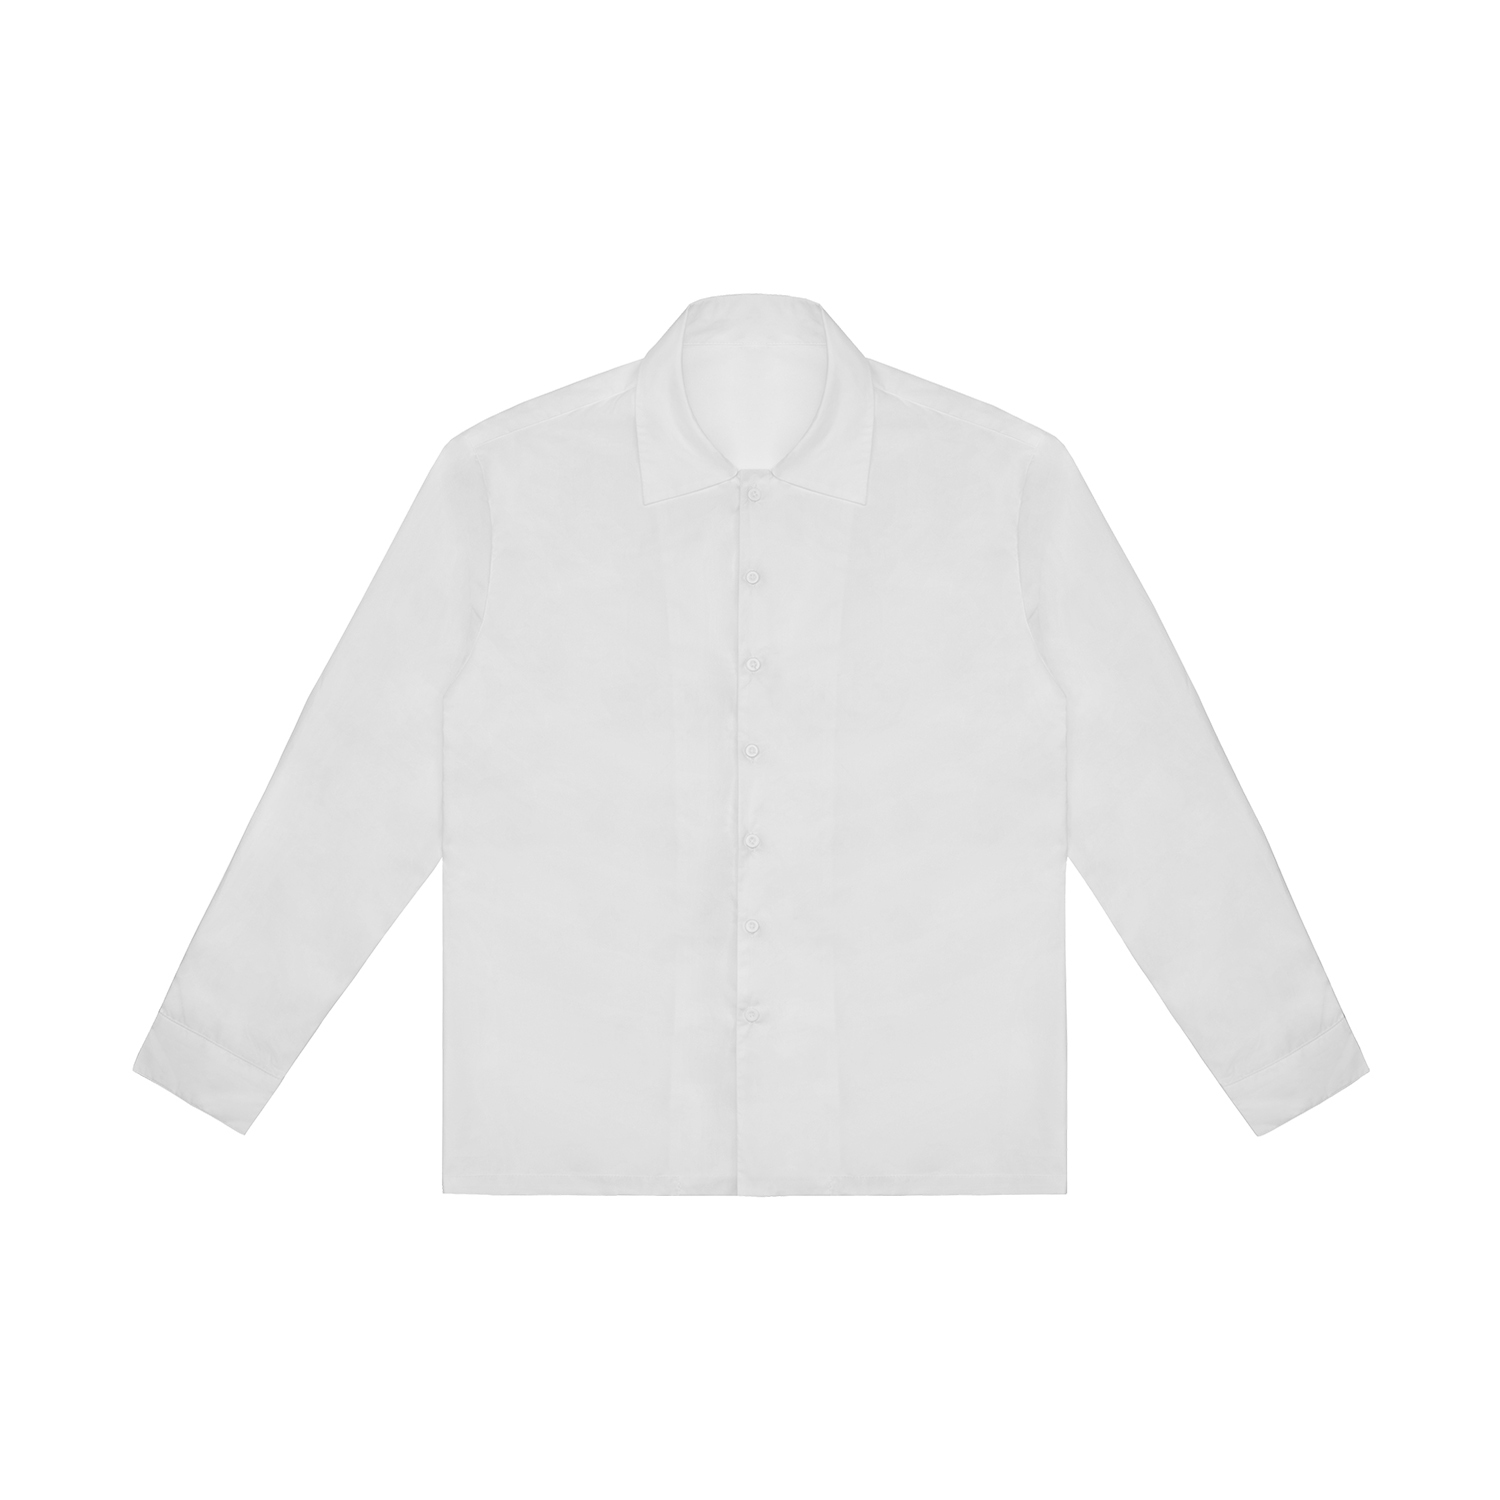 All-Over Print Men's Classic Long Sleeve Shirt | HugePOD-1